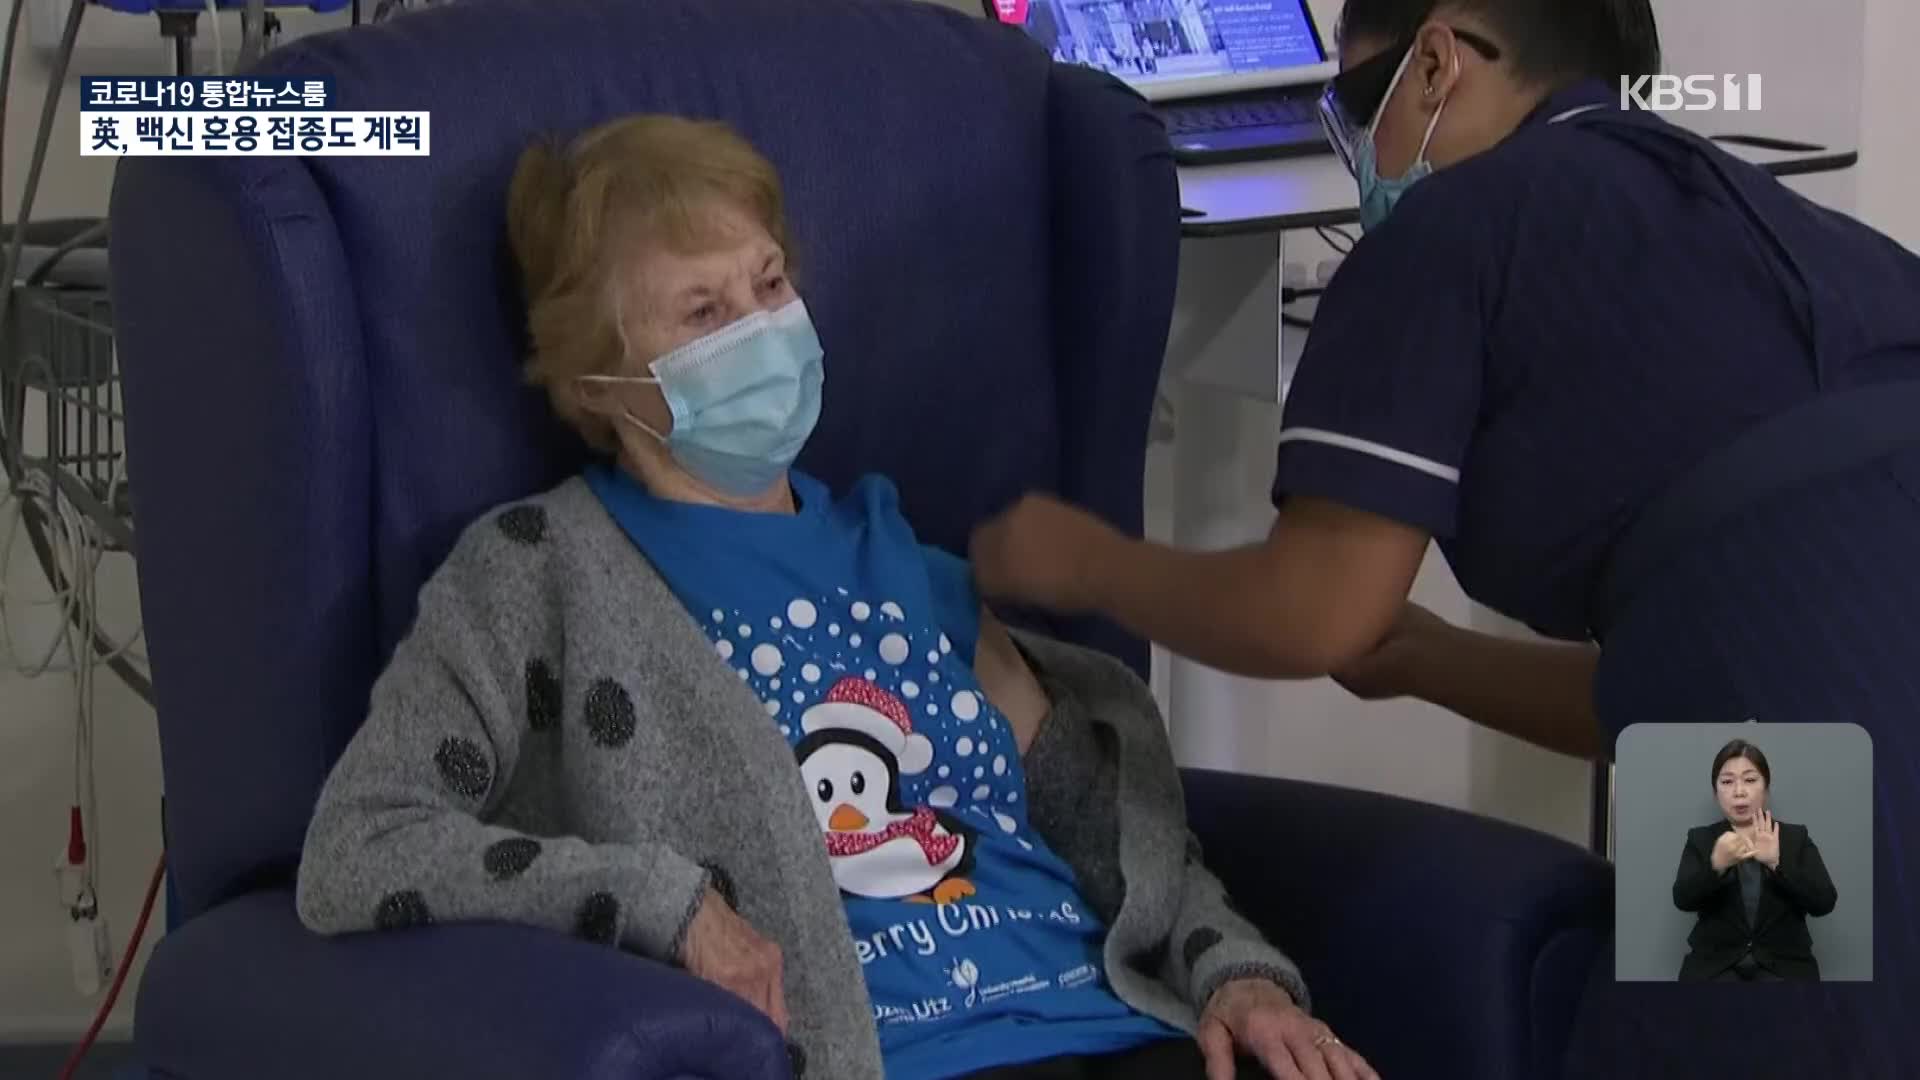 2020년 12월 9일 영국에 사는 90세 마가렛 키넌 씨가 최초로 화이자 백신을 맞고 있다